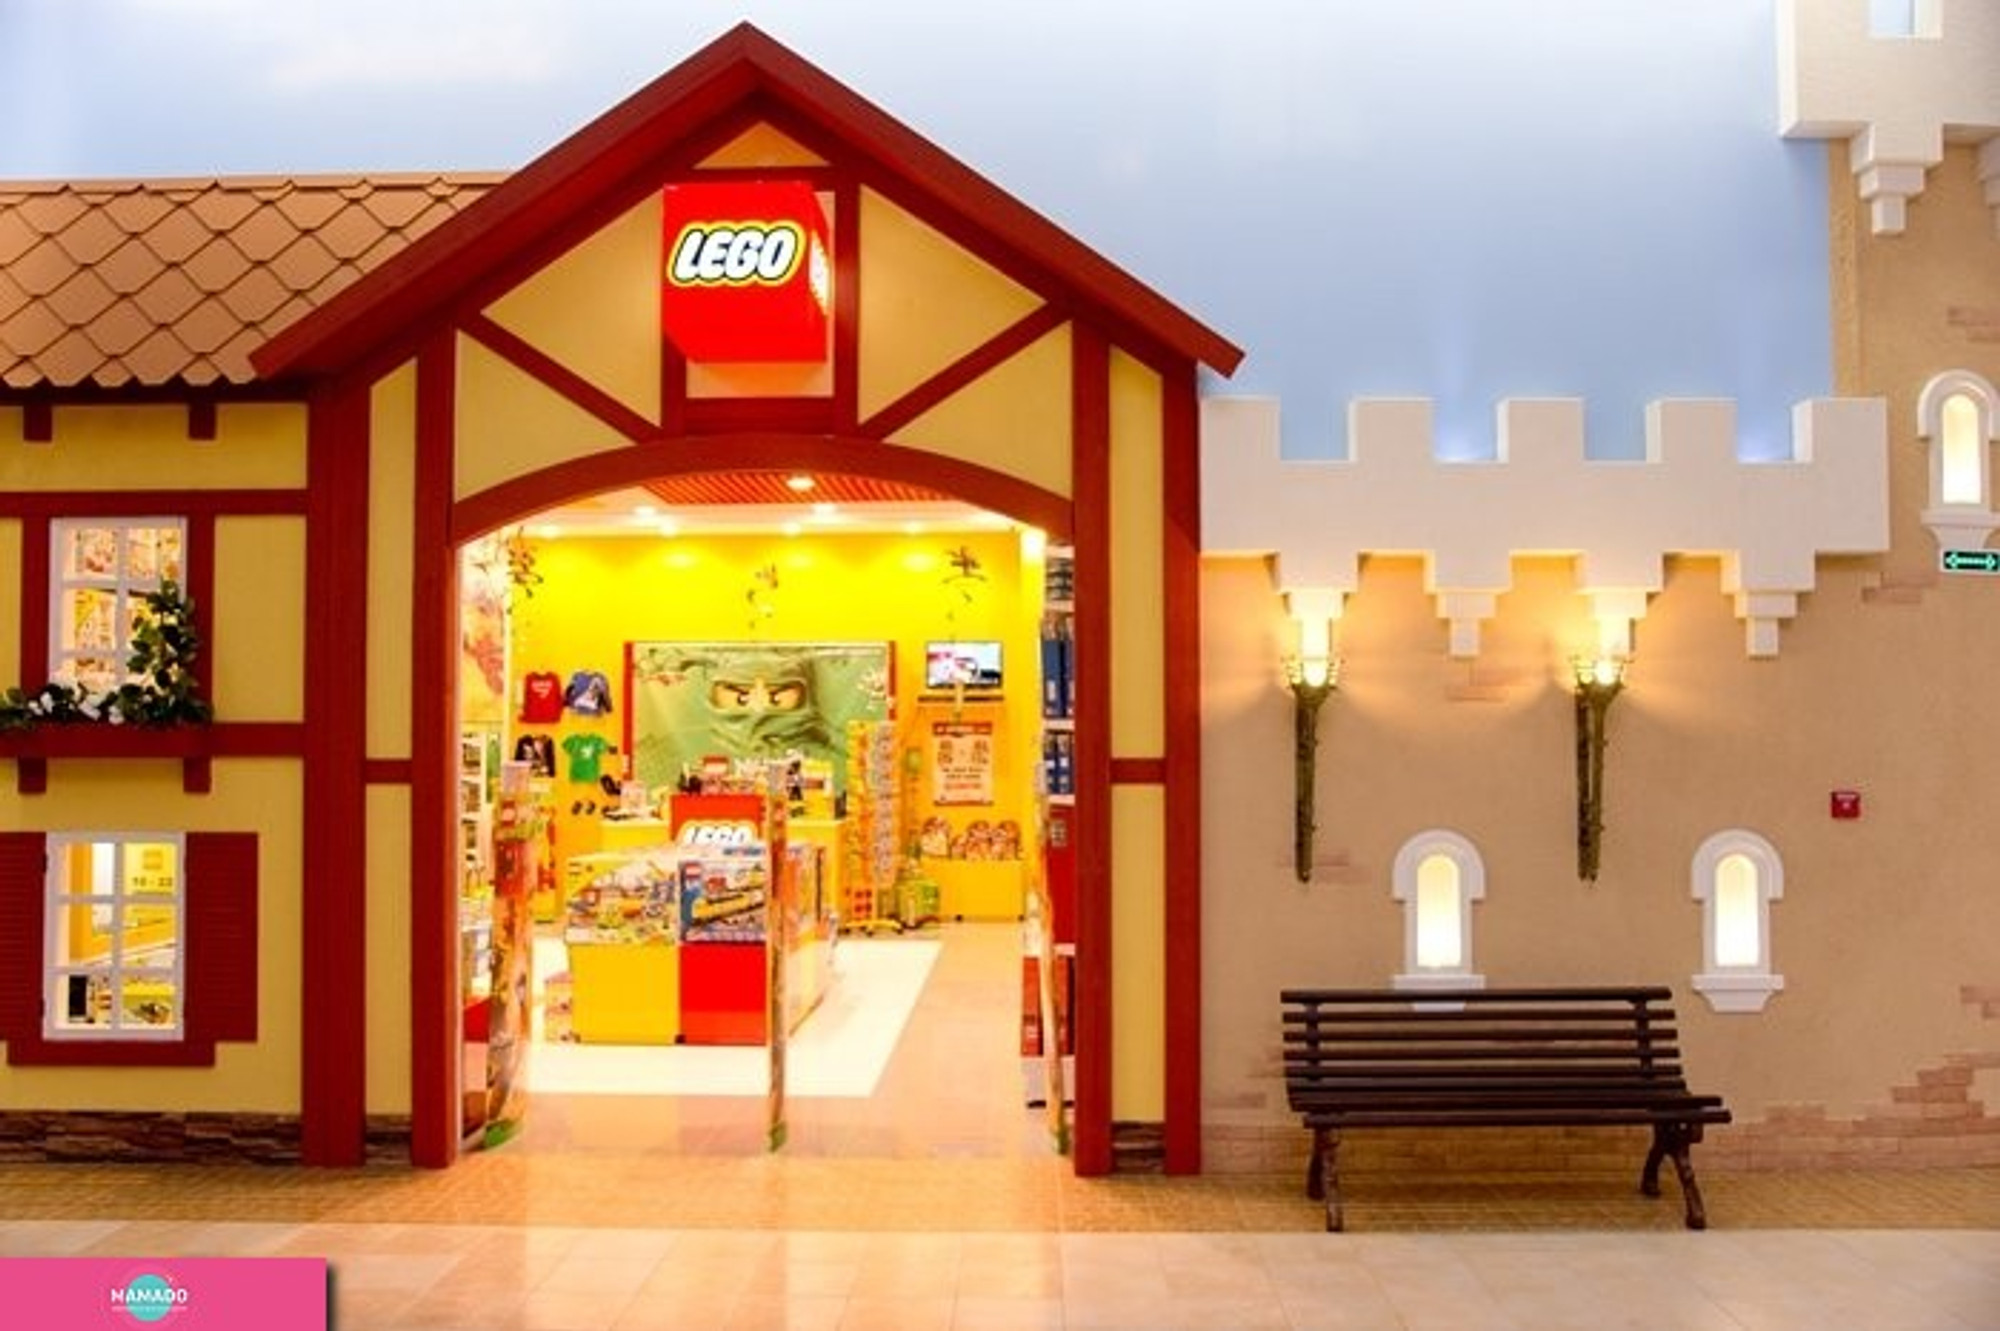 Lego (Лего), фирменный магазин конструкторов в ЦР "Дивный город" 